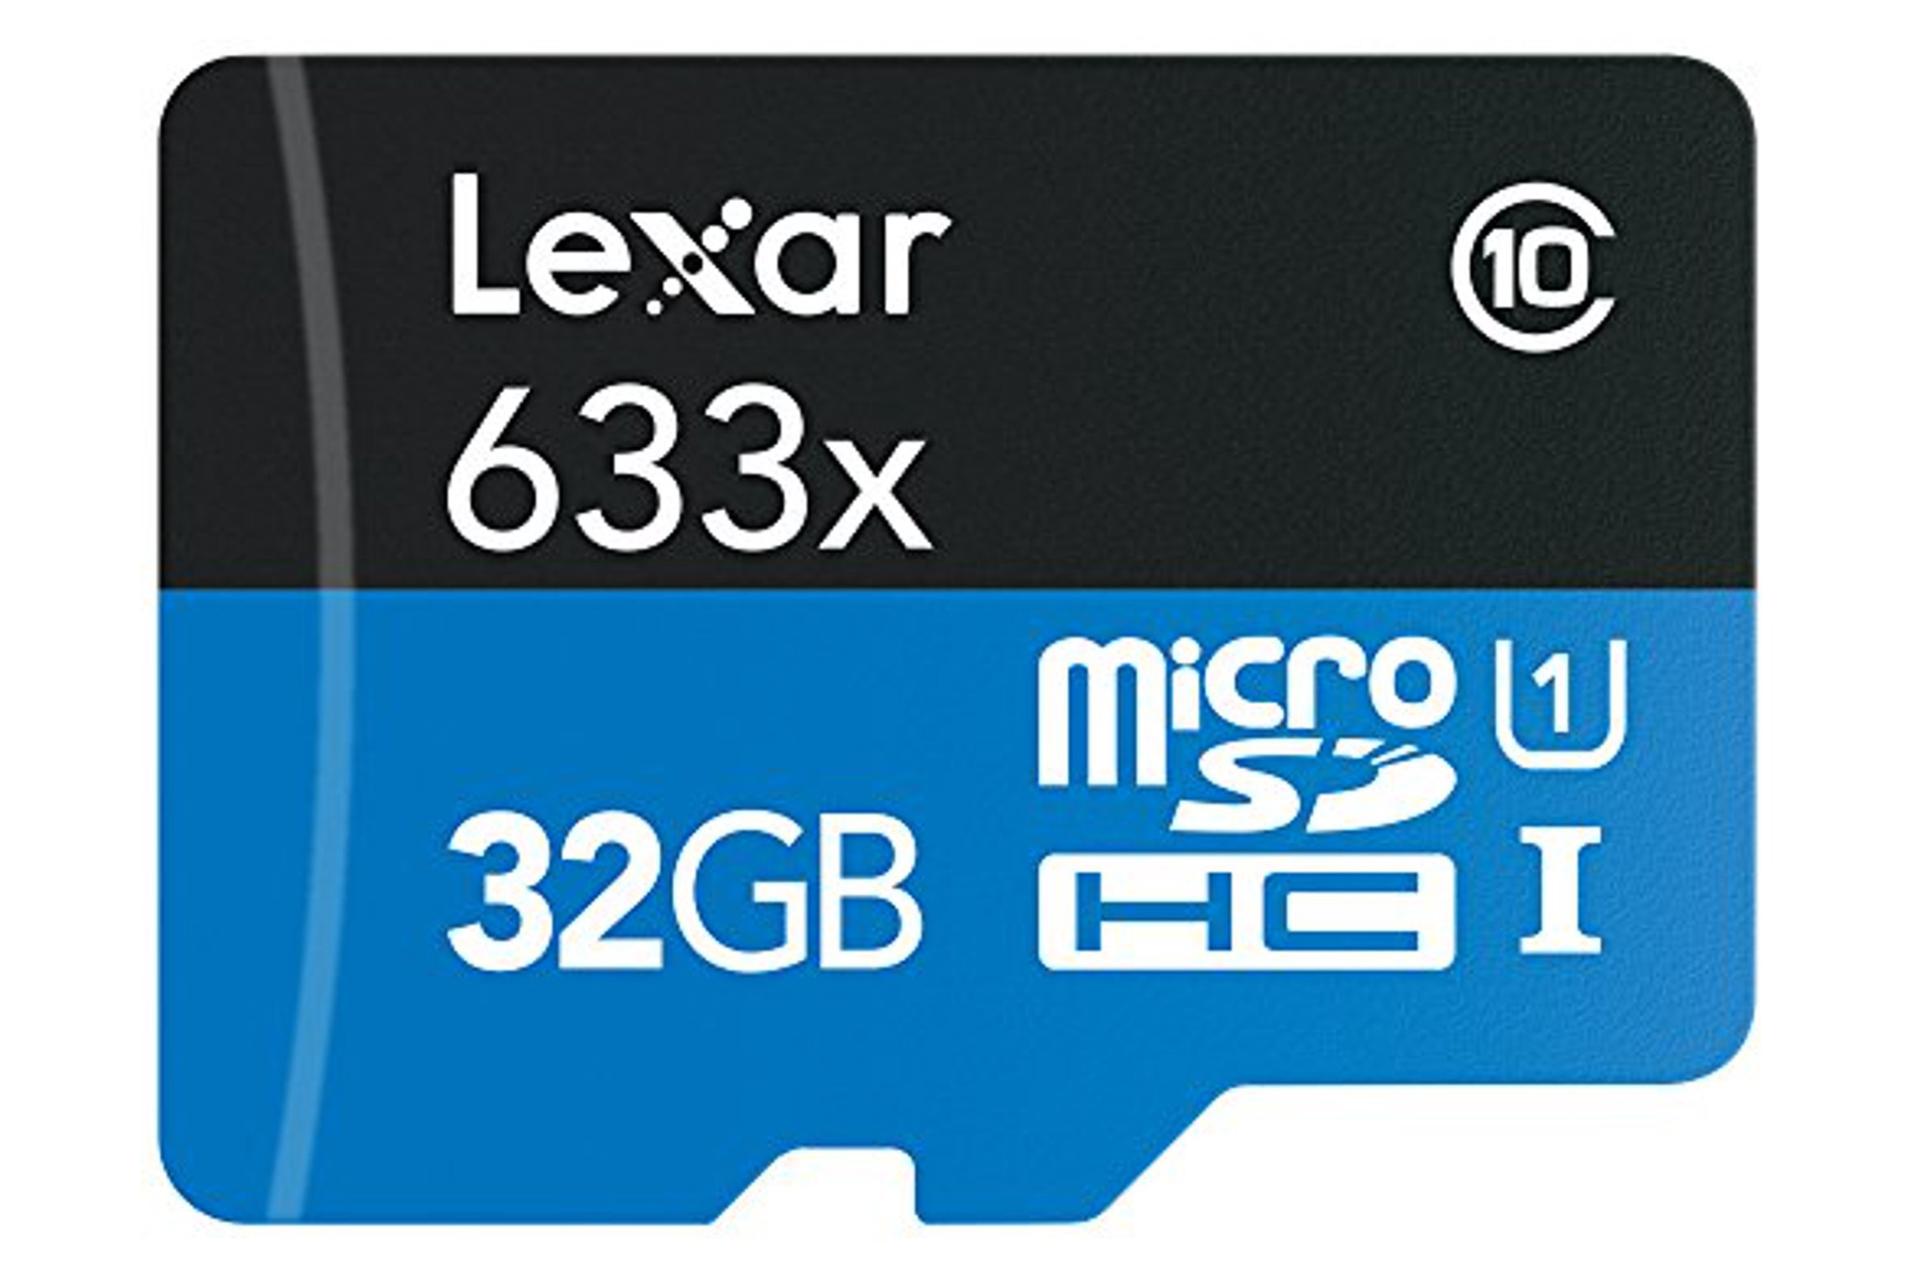 نمای روبرو کارت حافظه لکسار microSDHC با ظرفیت 32 گیگابایت مدل High Performance 633x A1 کلاس 10